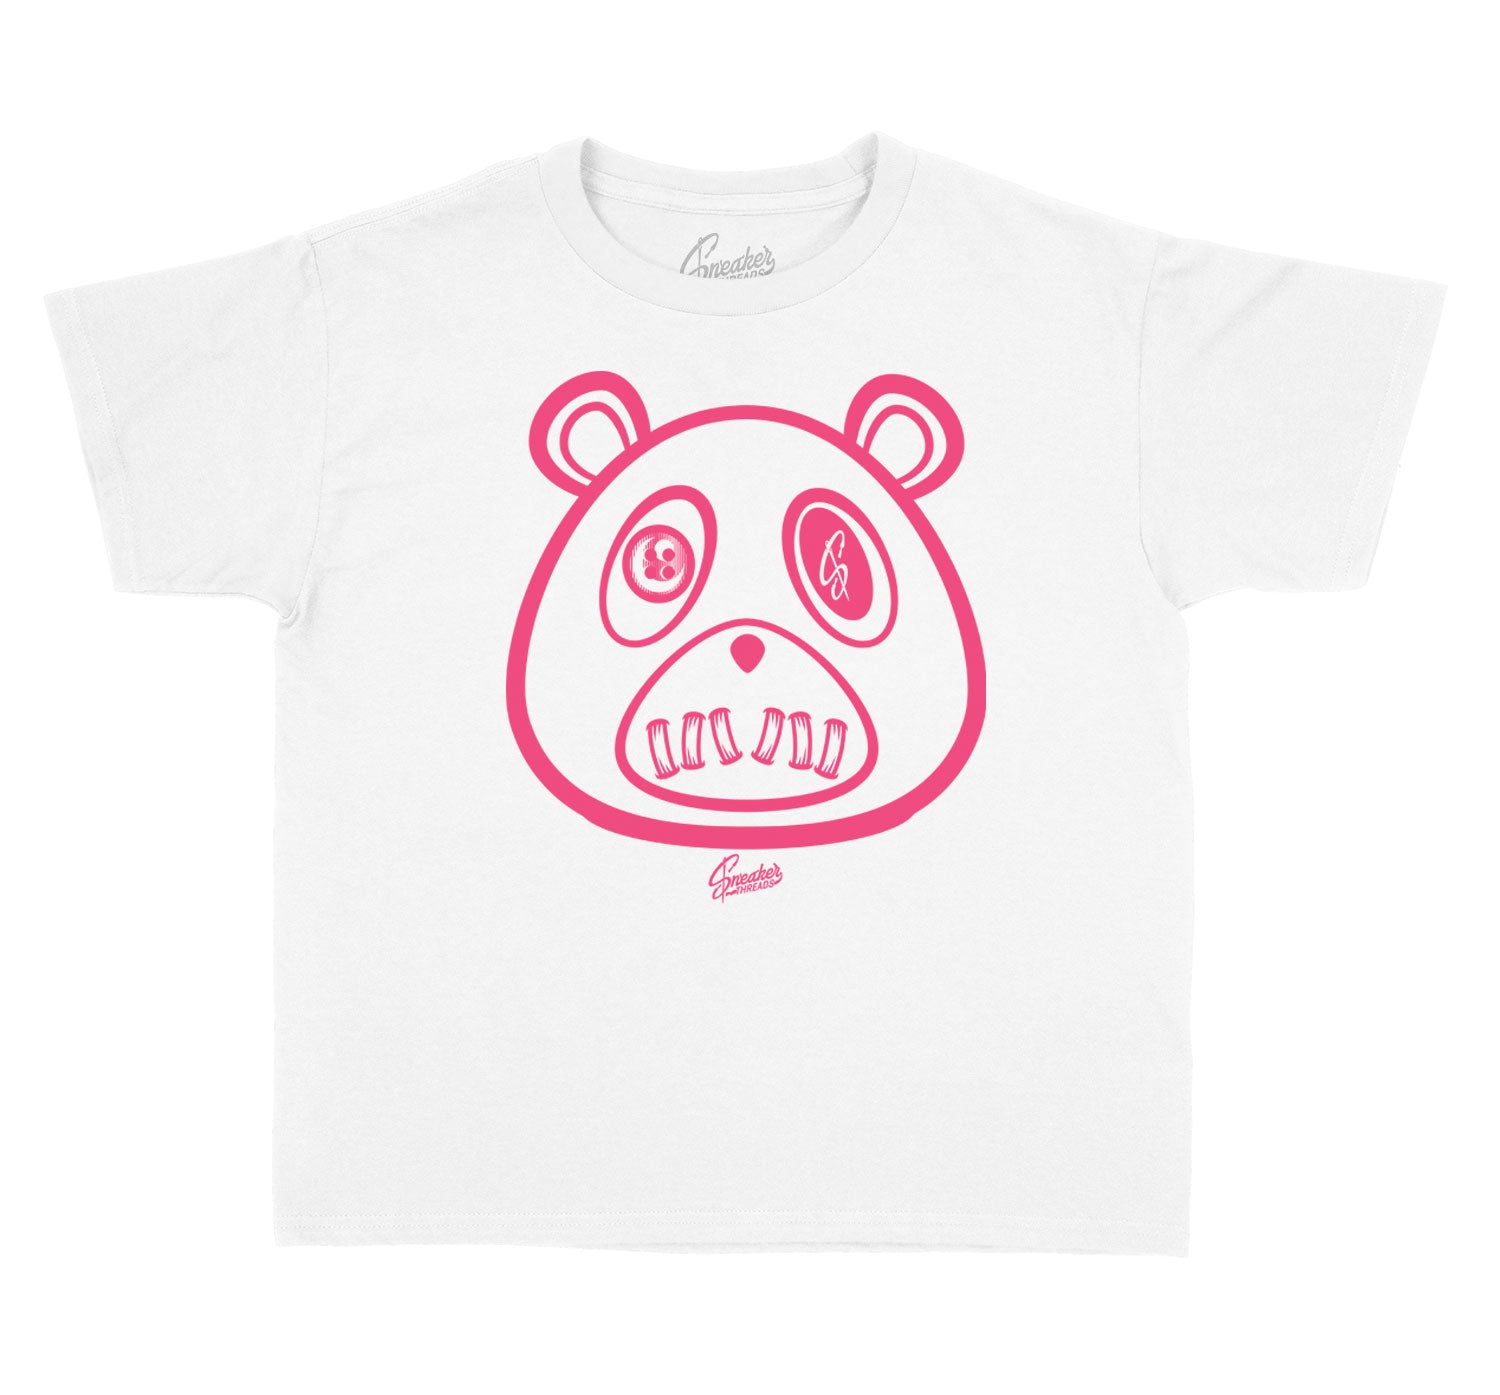 Kids Ice Cream 12 Shirt - ST Bear - White